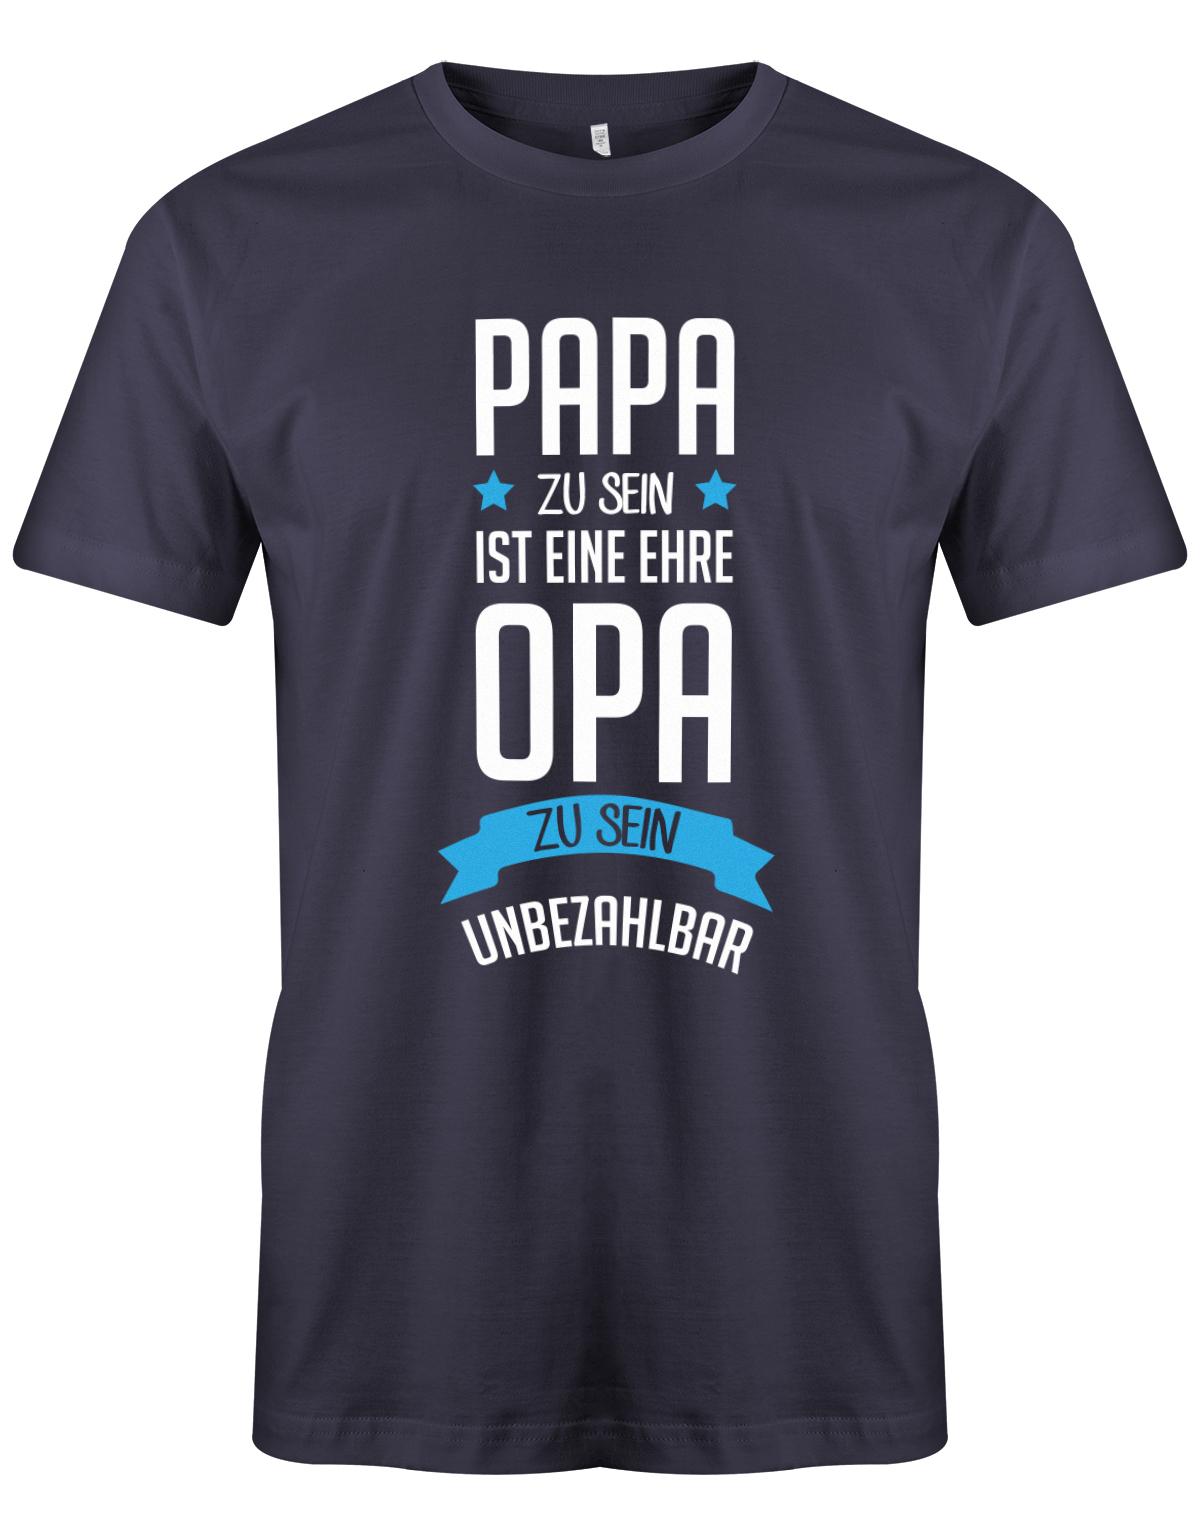 Opa T-Shirt Spruch für den werdenden Opa. Papa zu sein, ist eine Ehre, Opa zu sein unbezahlbar. Navy